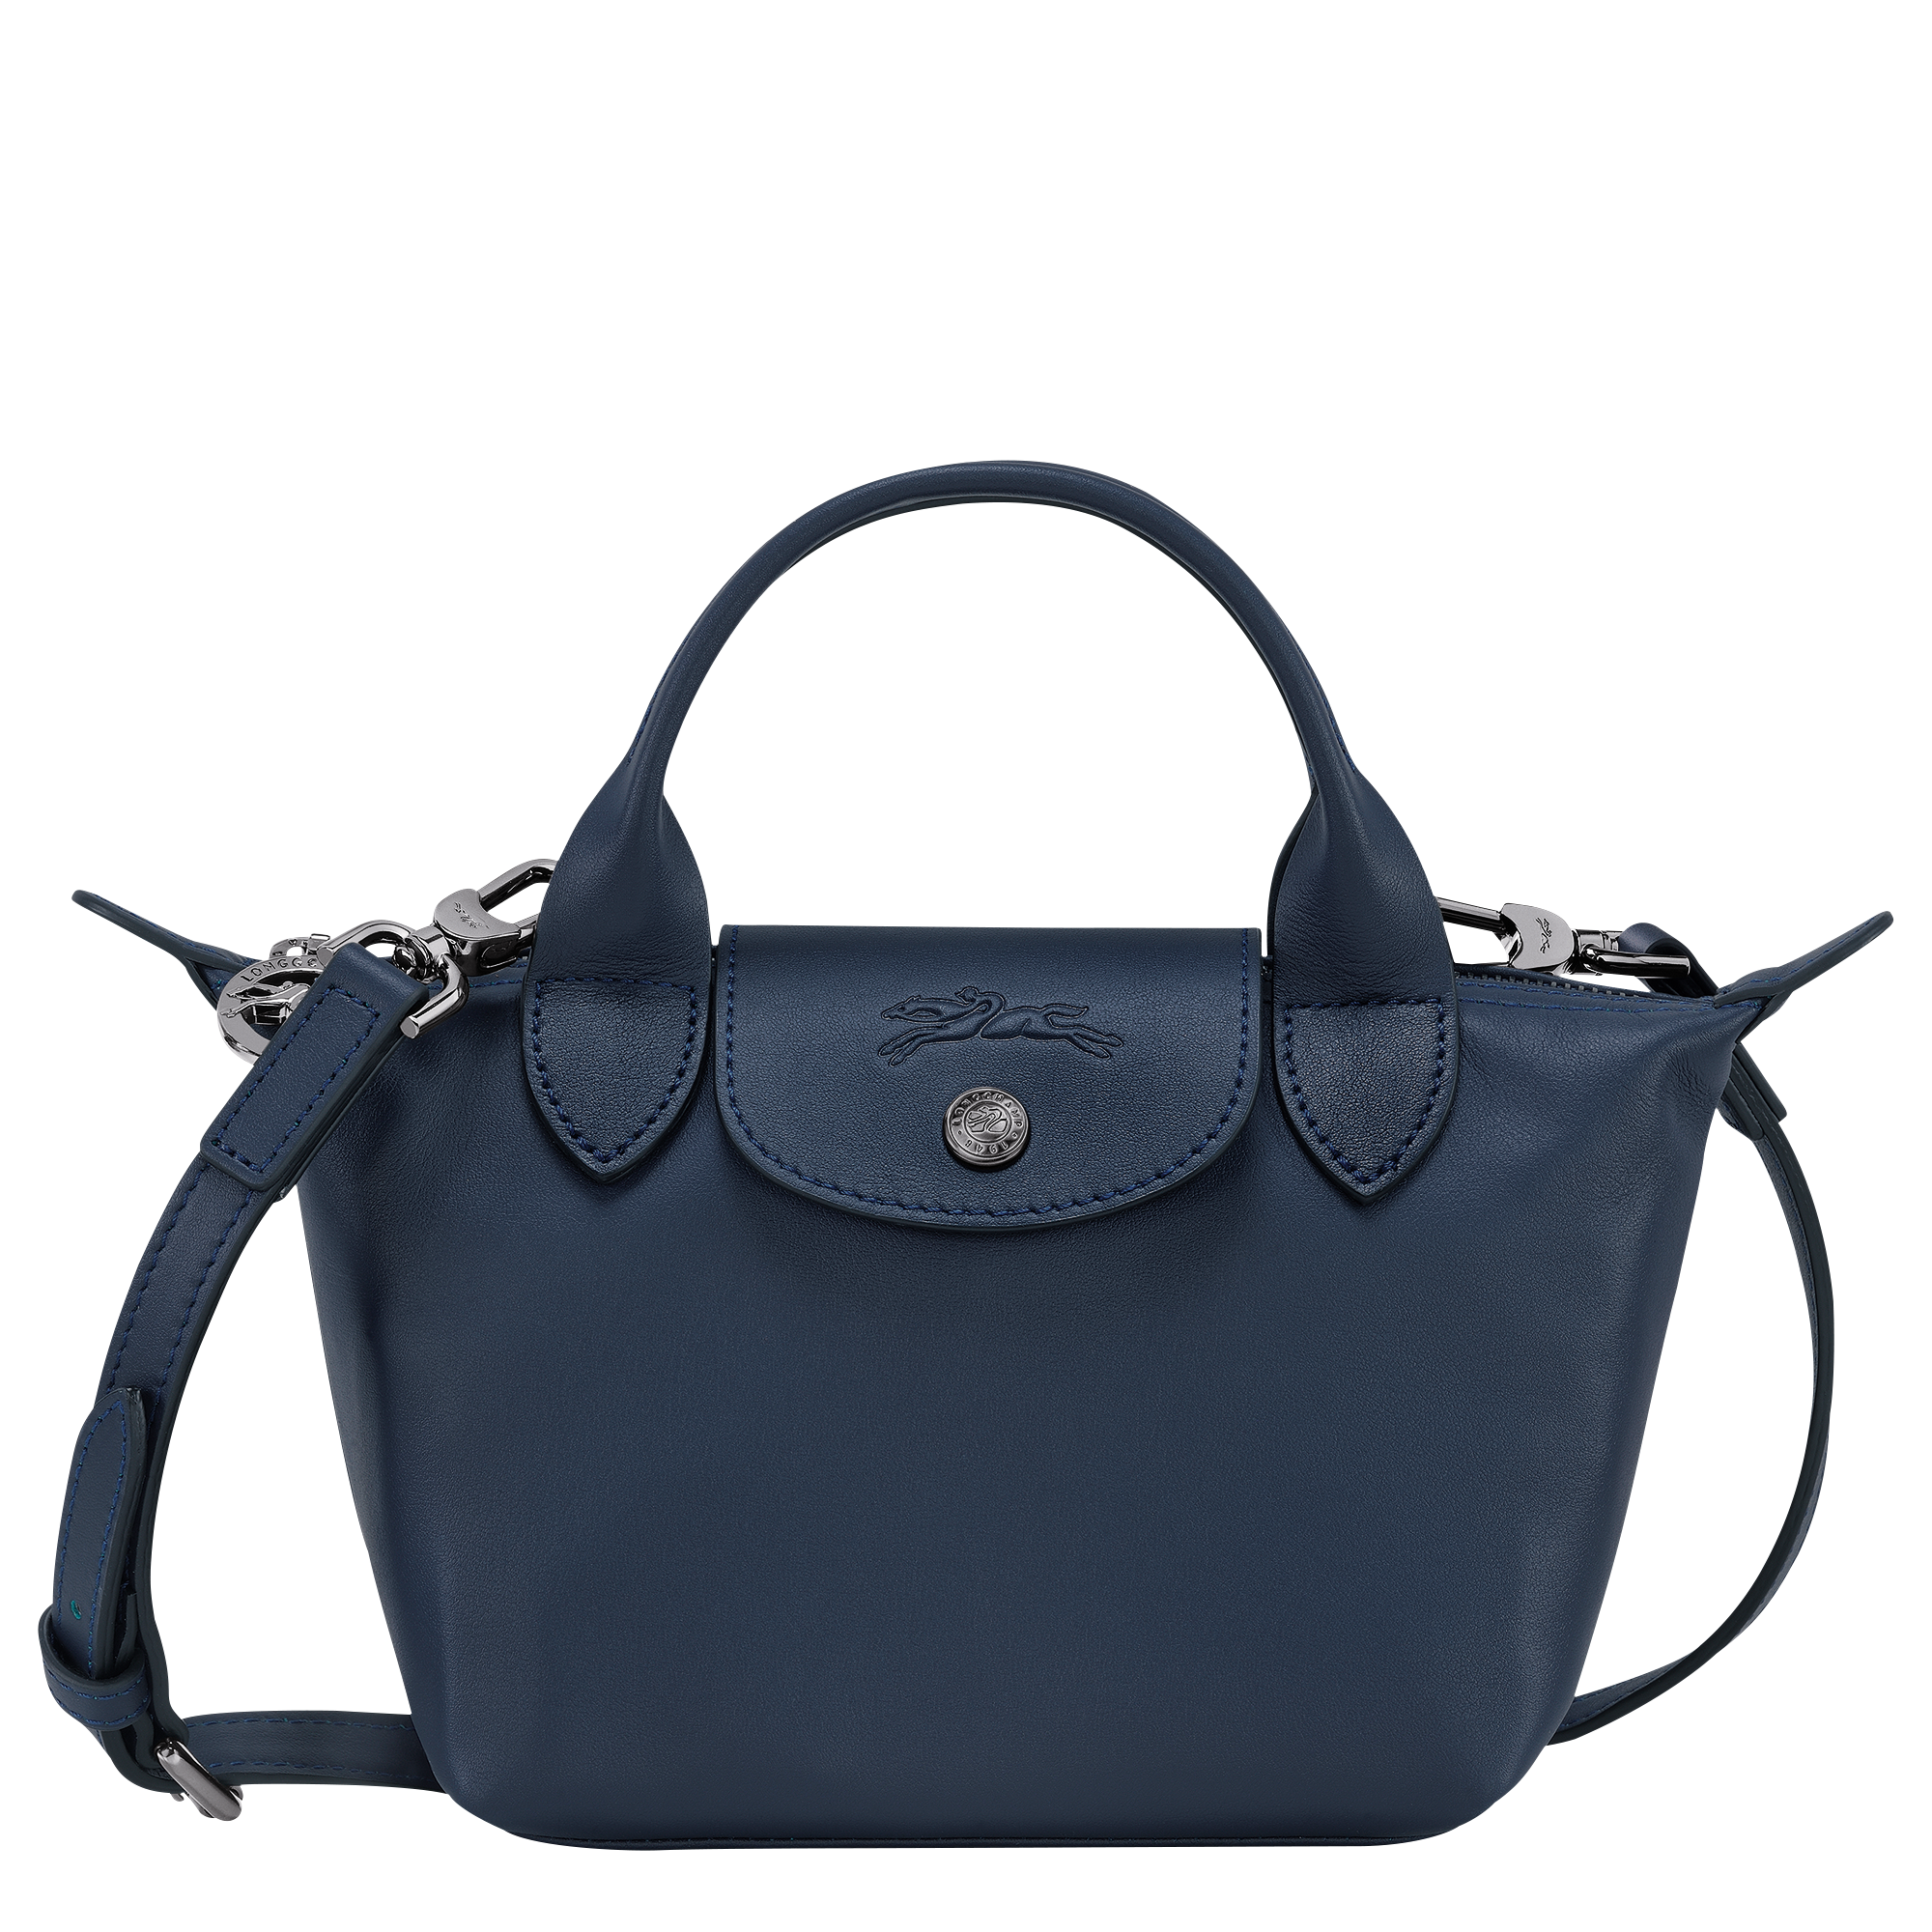 Longchamp 'Mini Le Pliage' Handbag